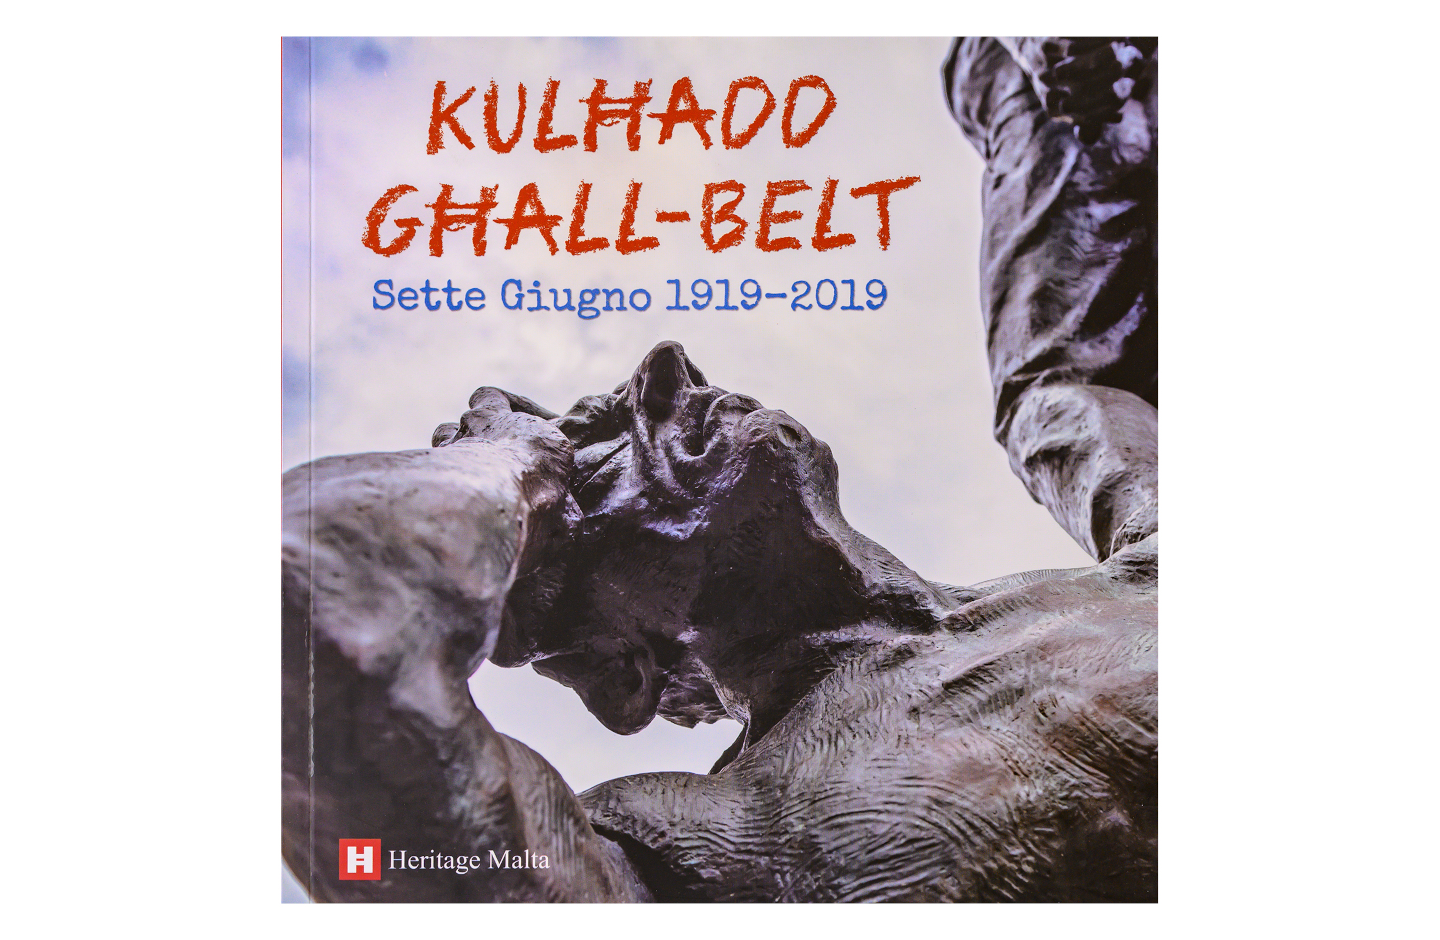 Kulħadd għall-Belt – Sette Giugno 1919-2019